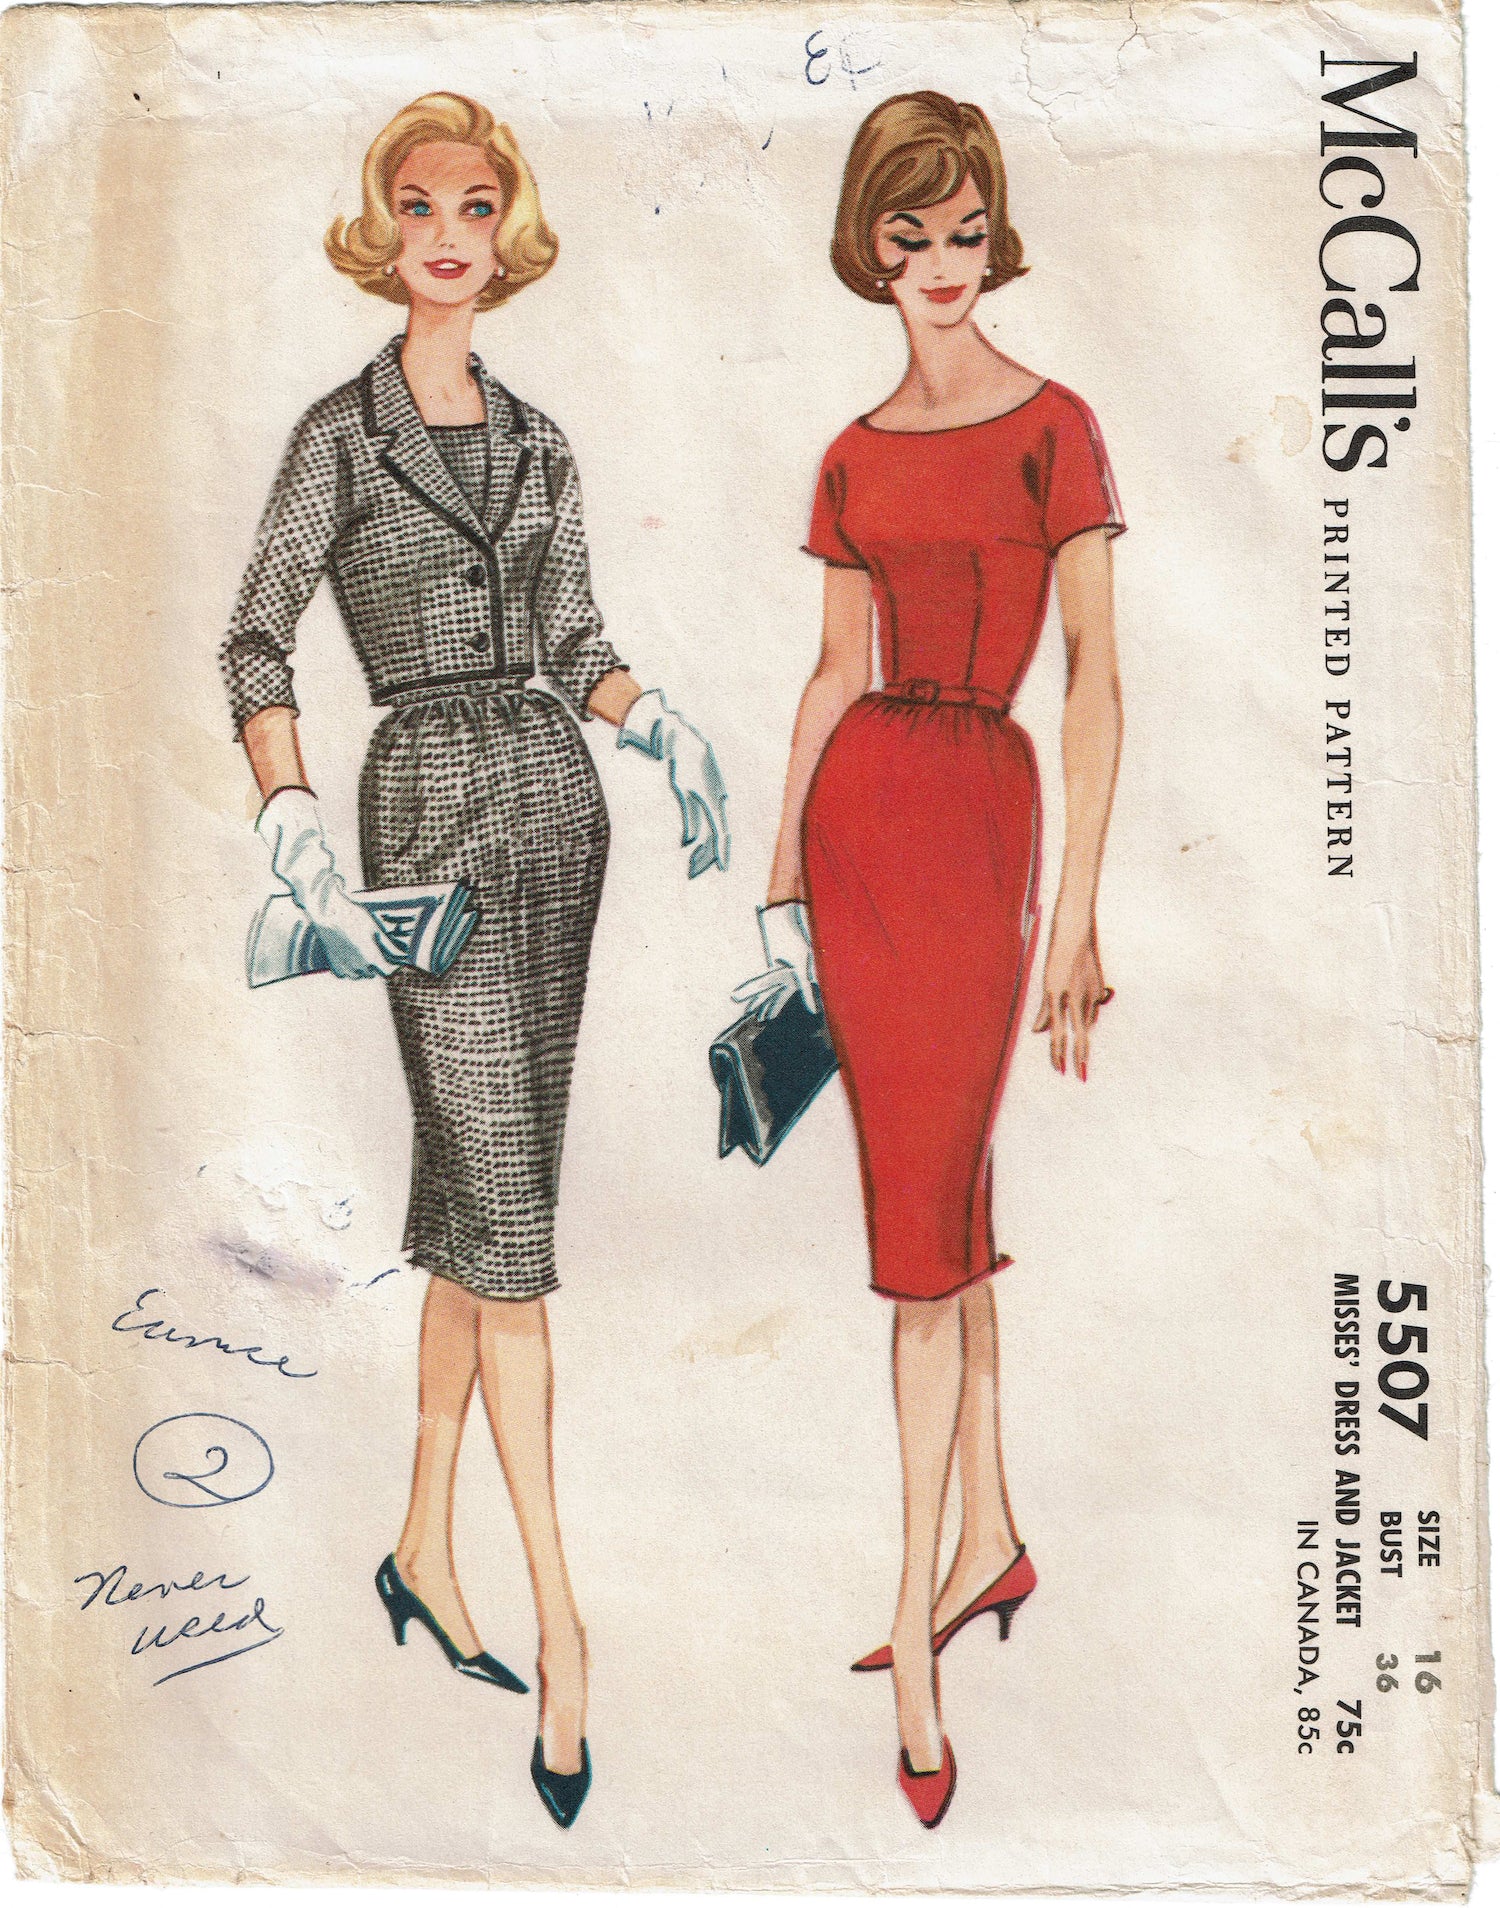 1960s VTG McCalls Sewing Pattern 5507 Uncut Misses Dress & Jacket 36B –  Vintage4me2